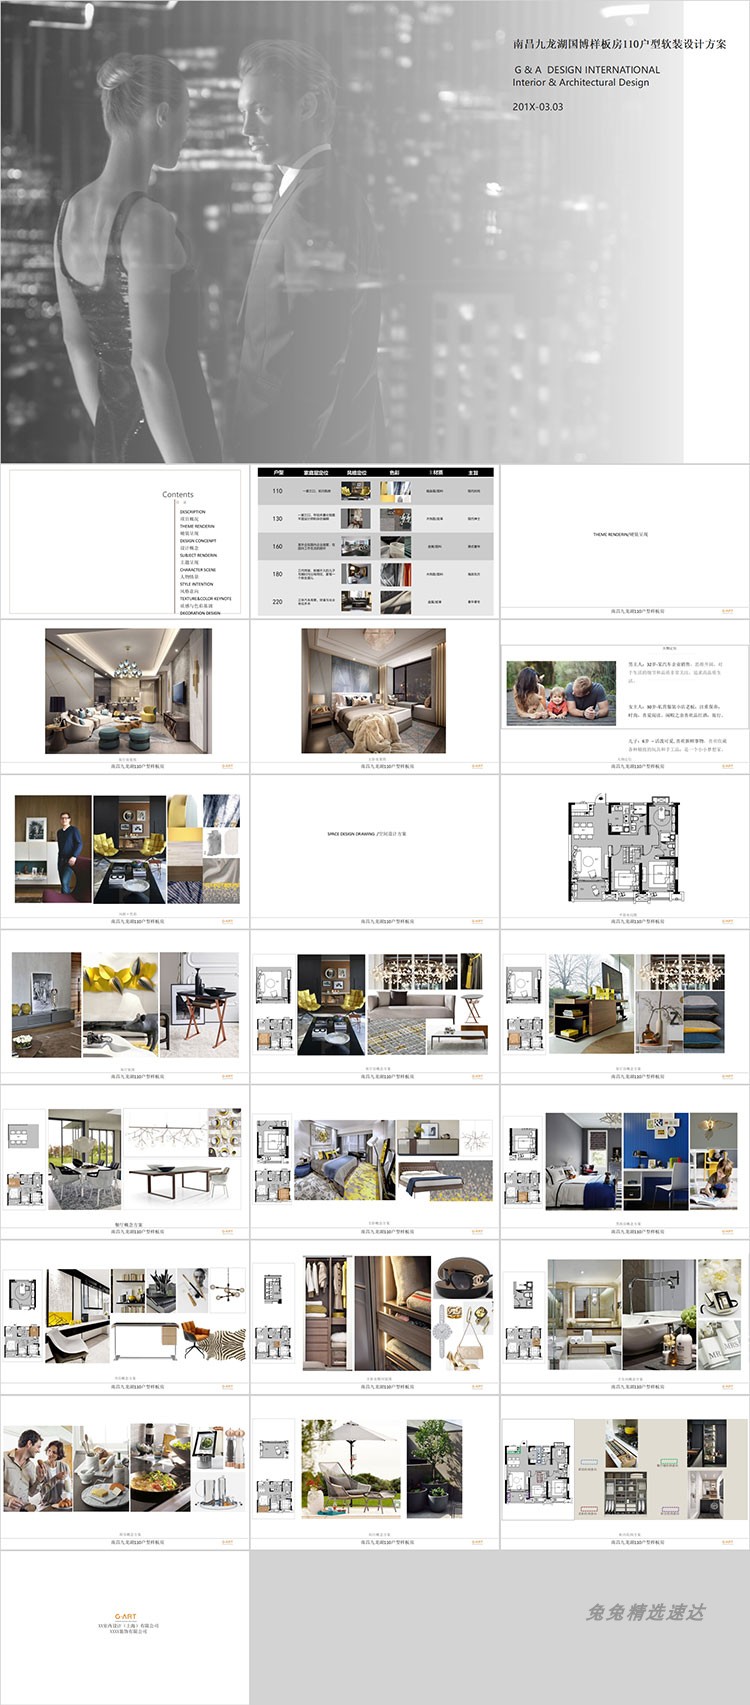 现代简约风格室内设计样板房软装概念方案PPT模板可编辑设计素材 第12张